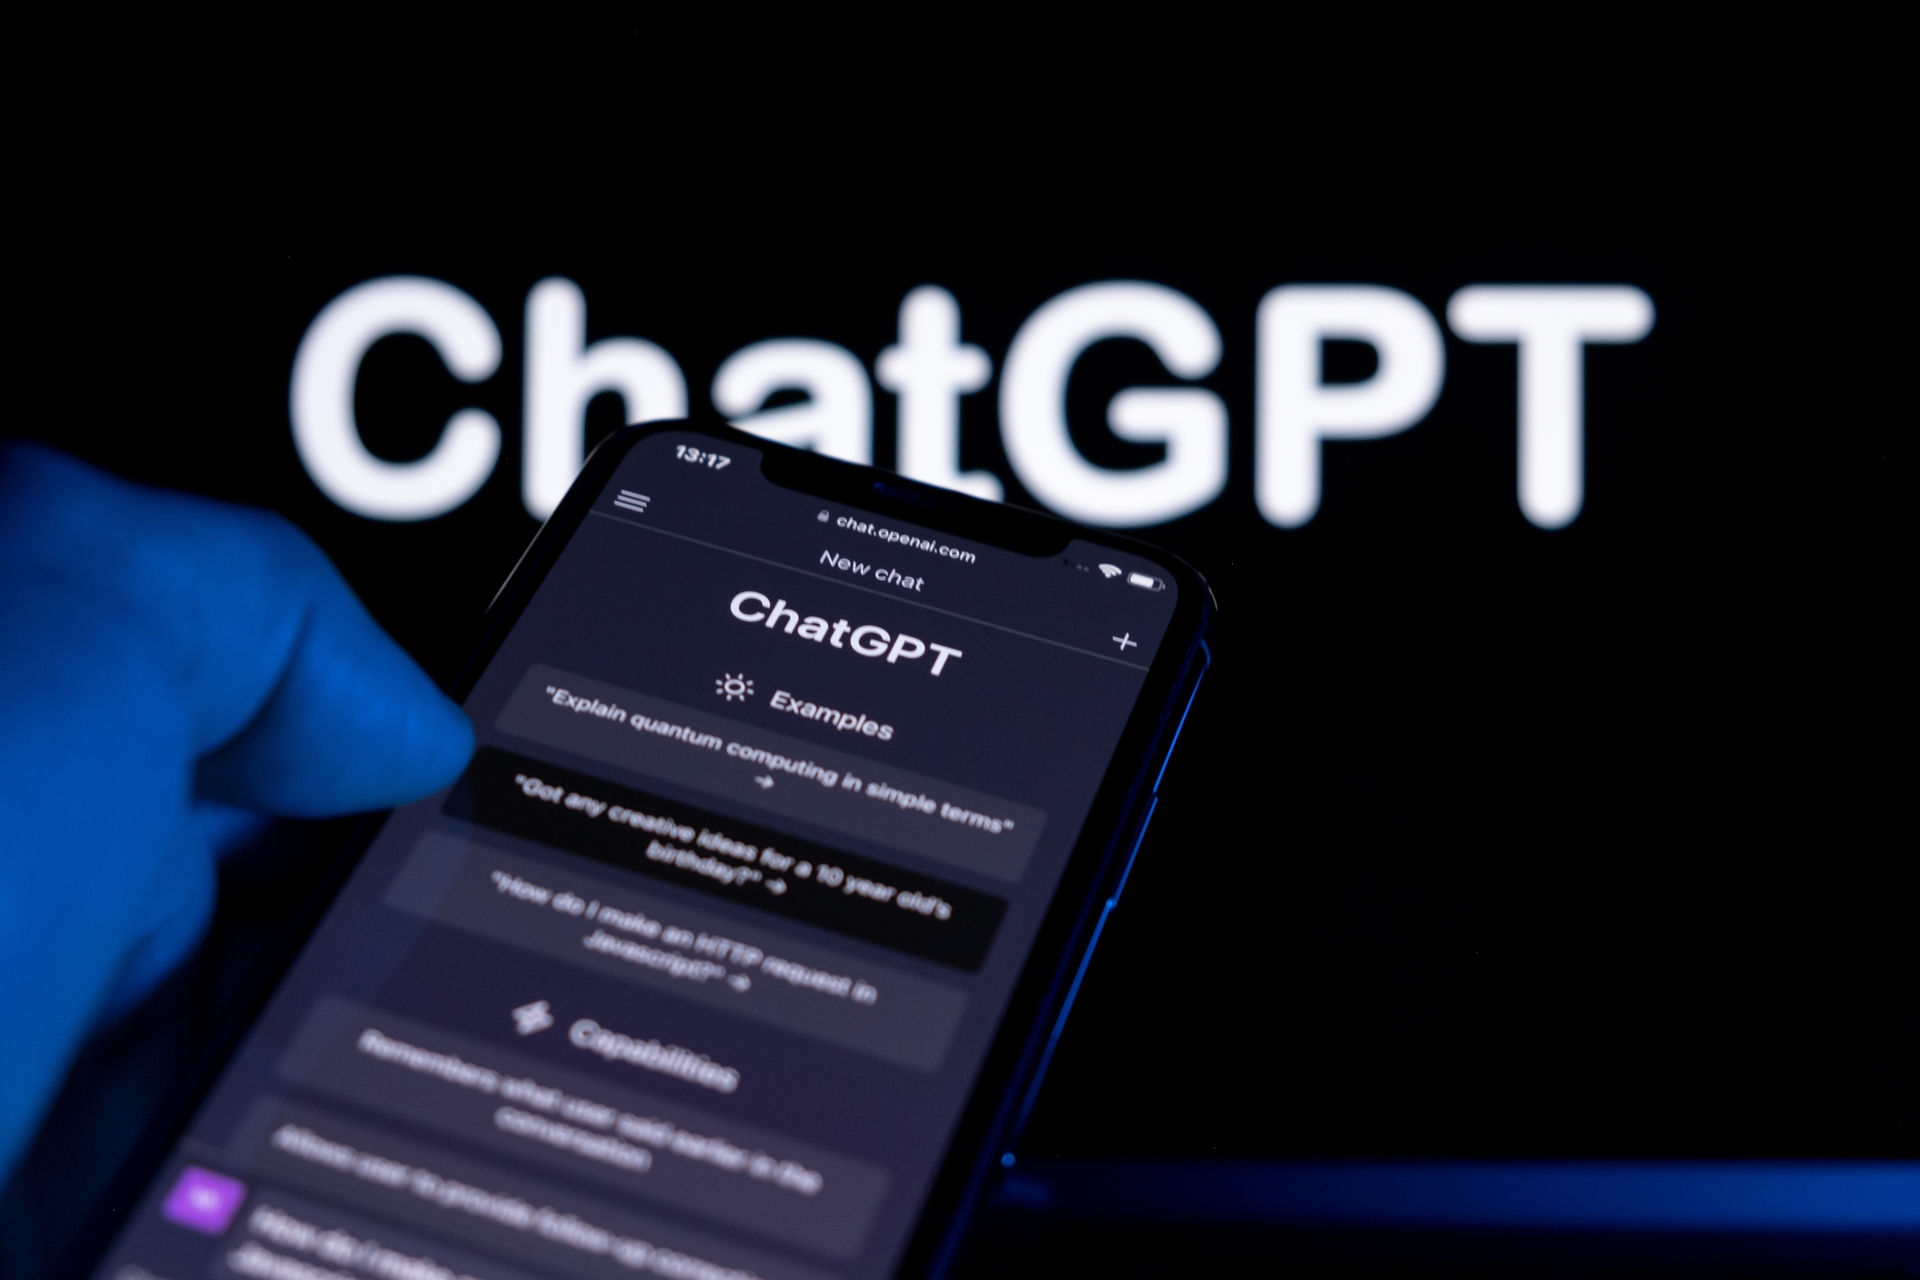 ChatGPT a un énorme potentiel éducatif selon sa directrice technique. Oui, mais lequel ?